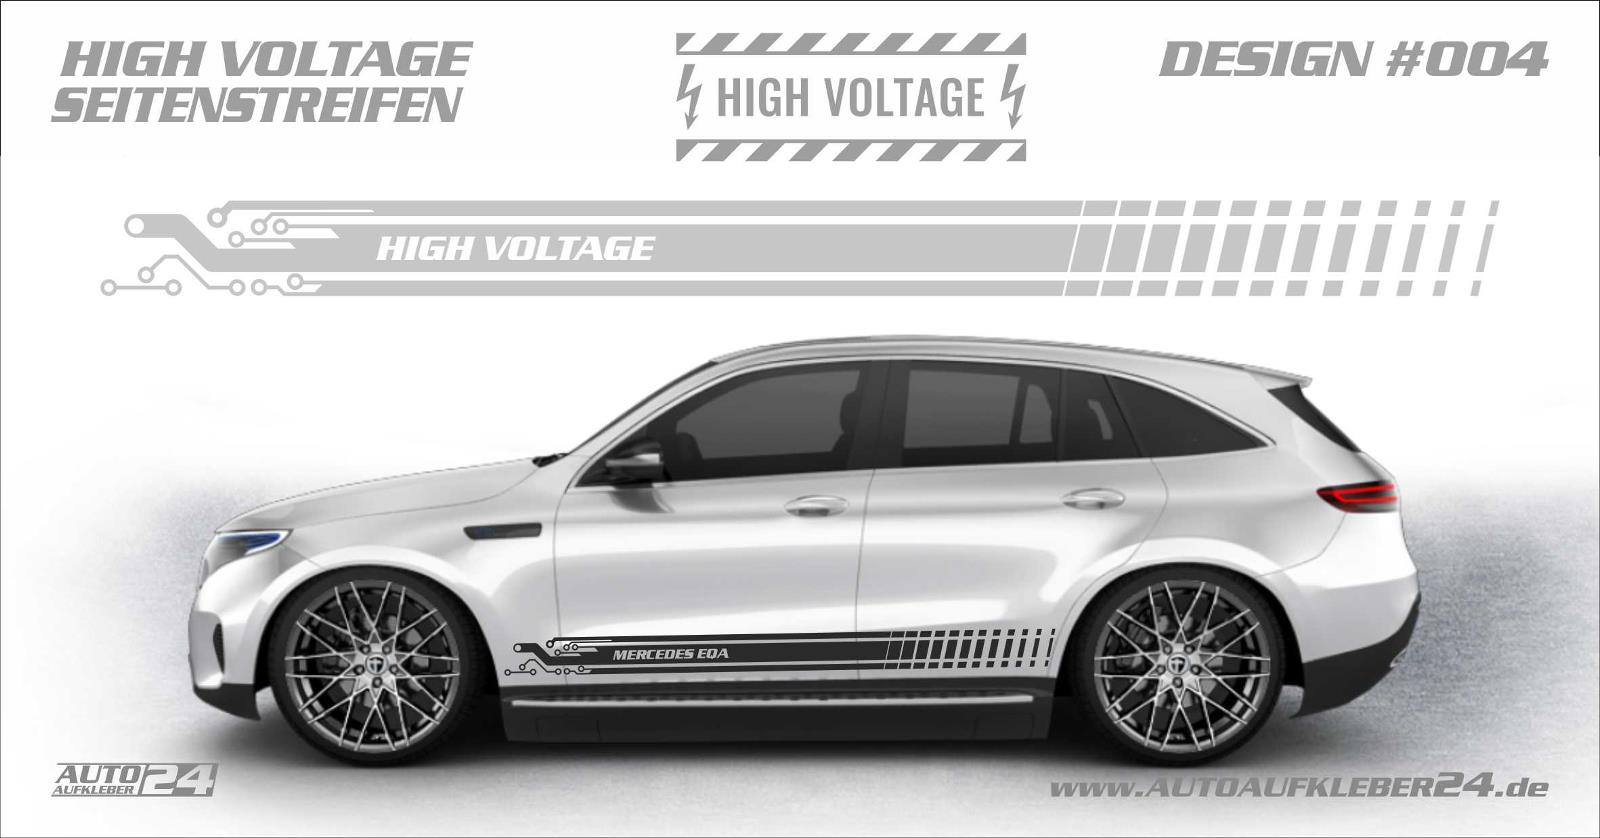 Tuning Aufkleber für VW Audi Bmw und Karosserie Sticker Auto